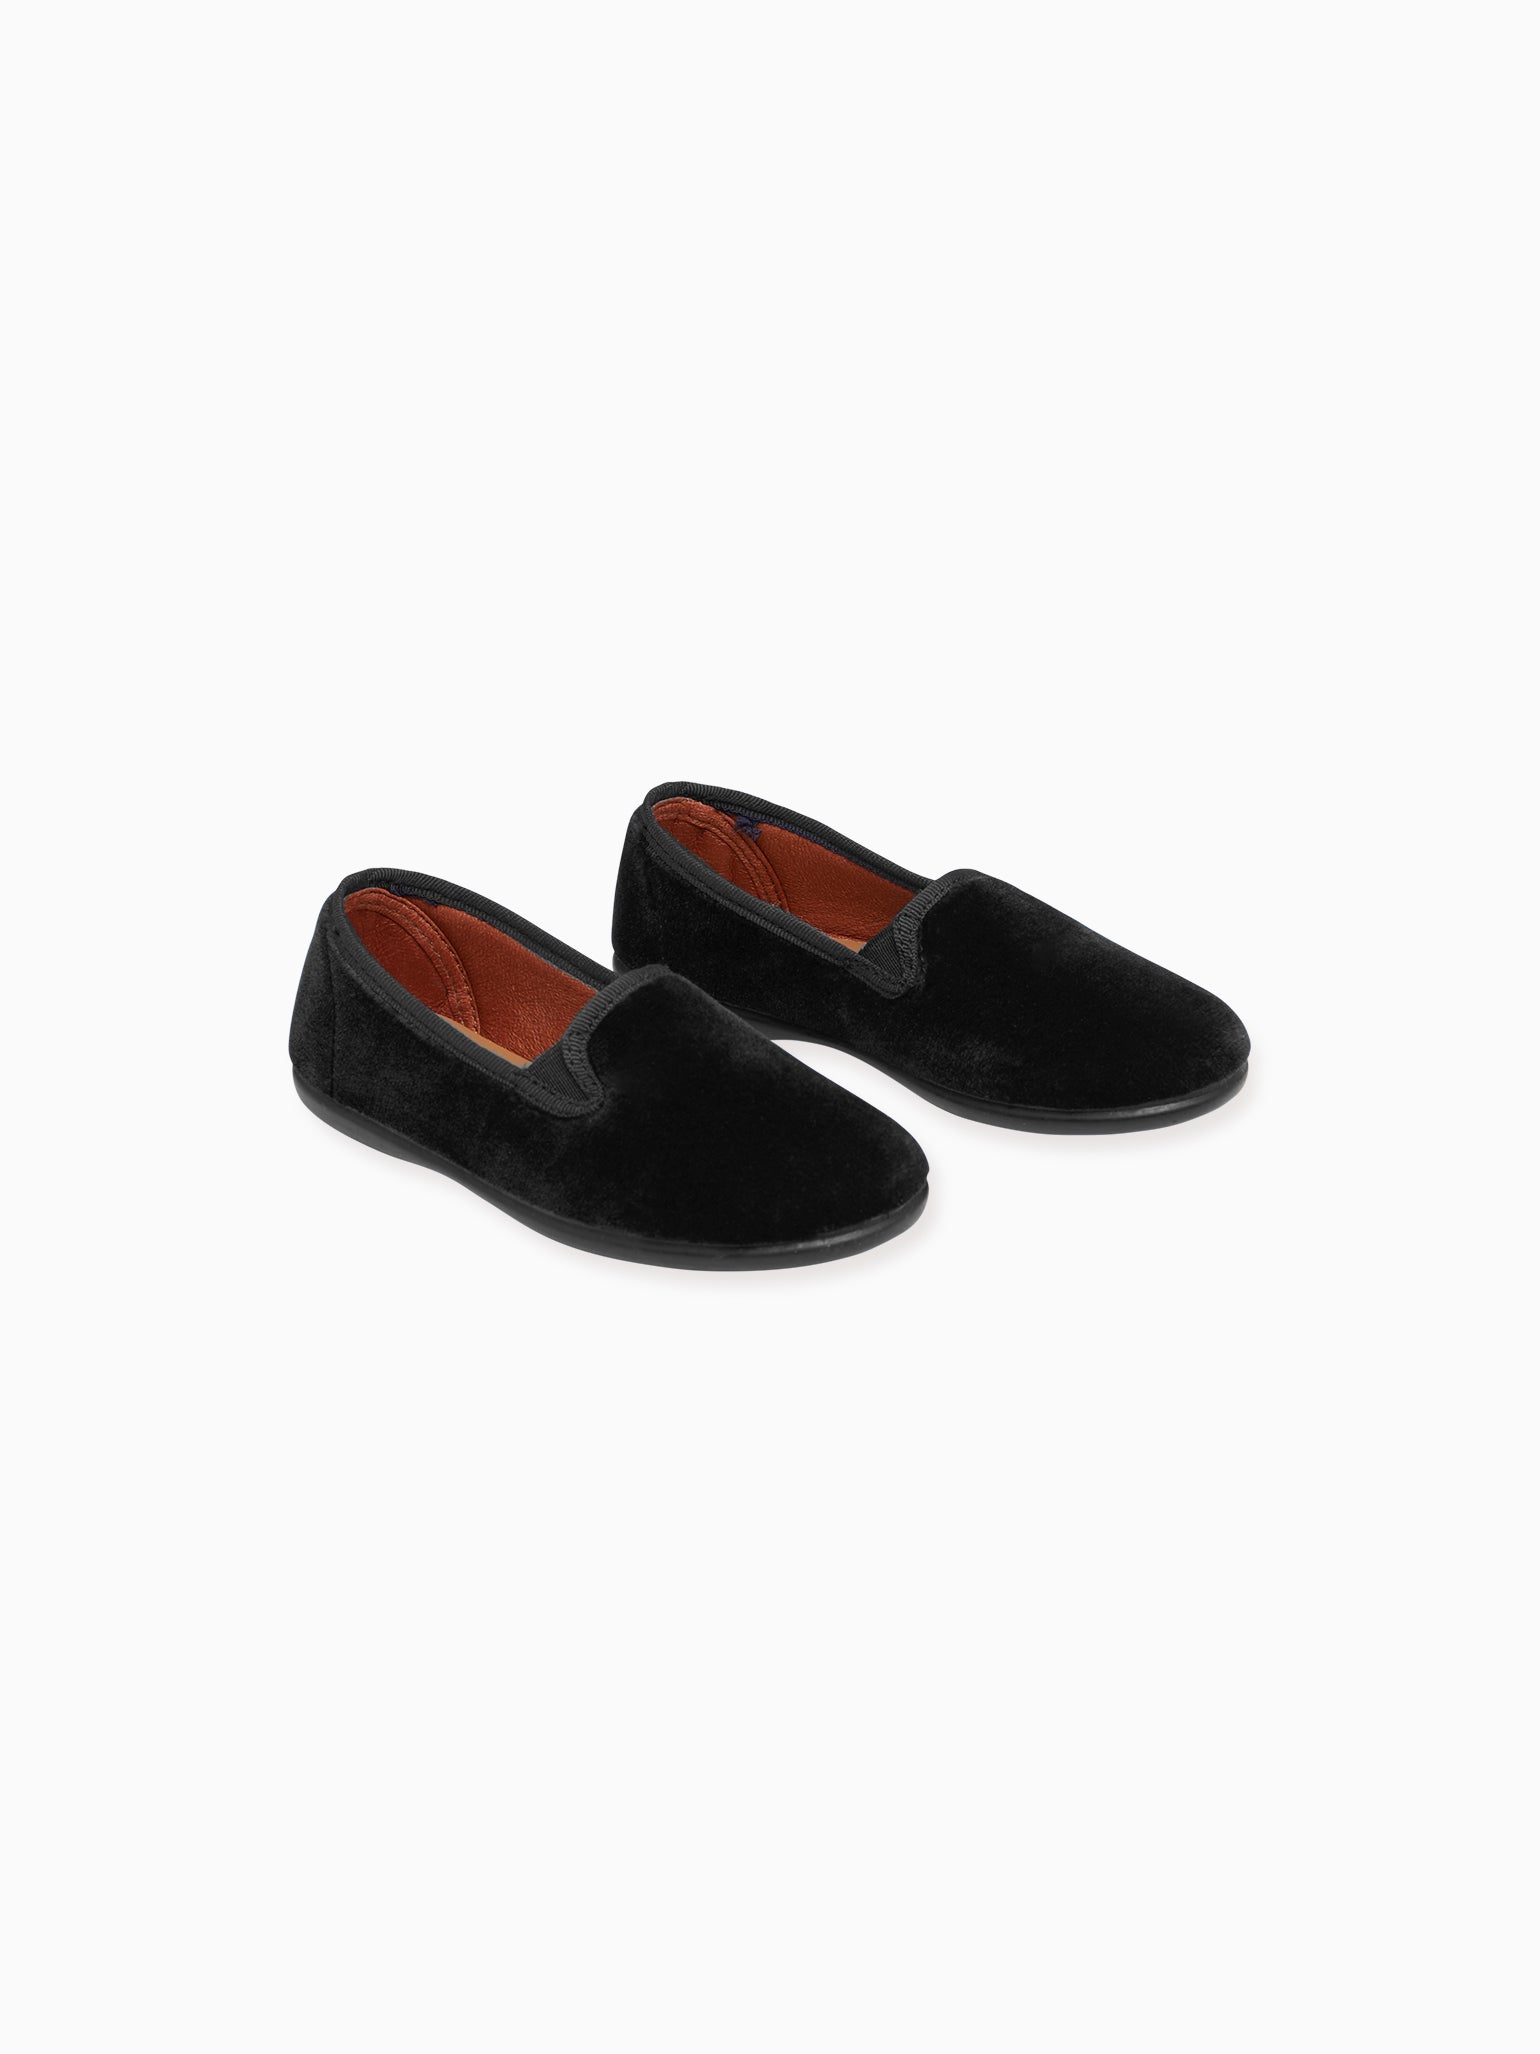 Black Velvet Kids Slipper Shoes